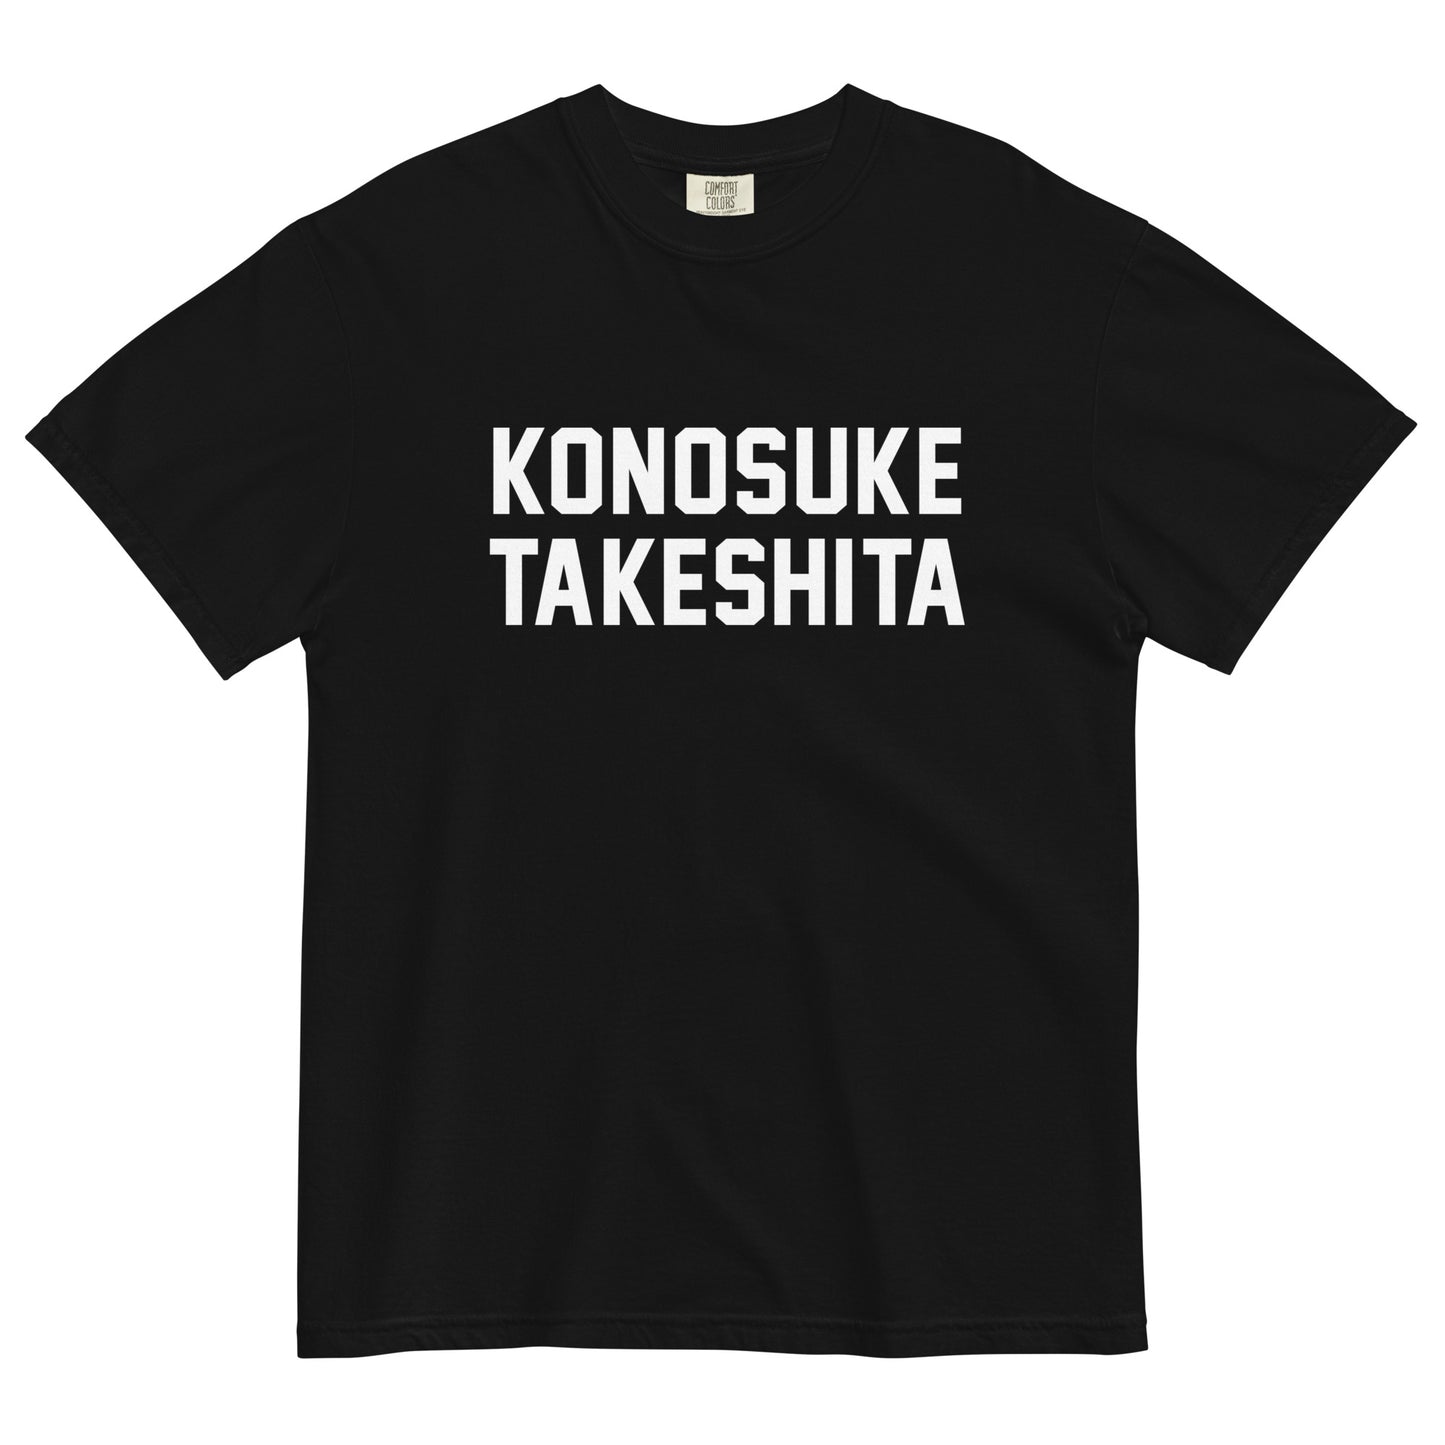 KONOSUKE TAKESHITA